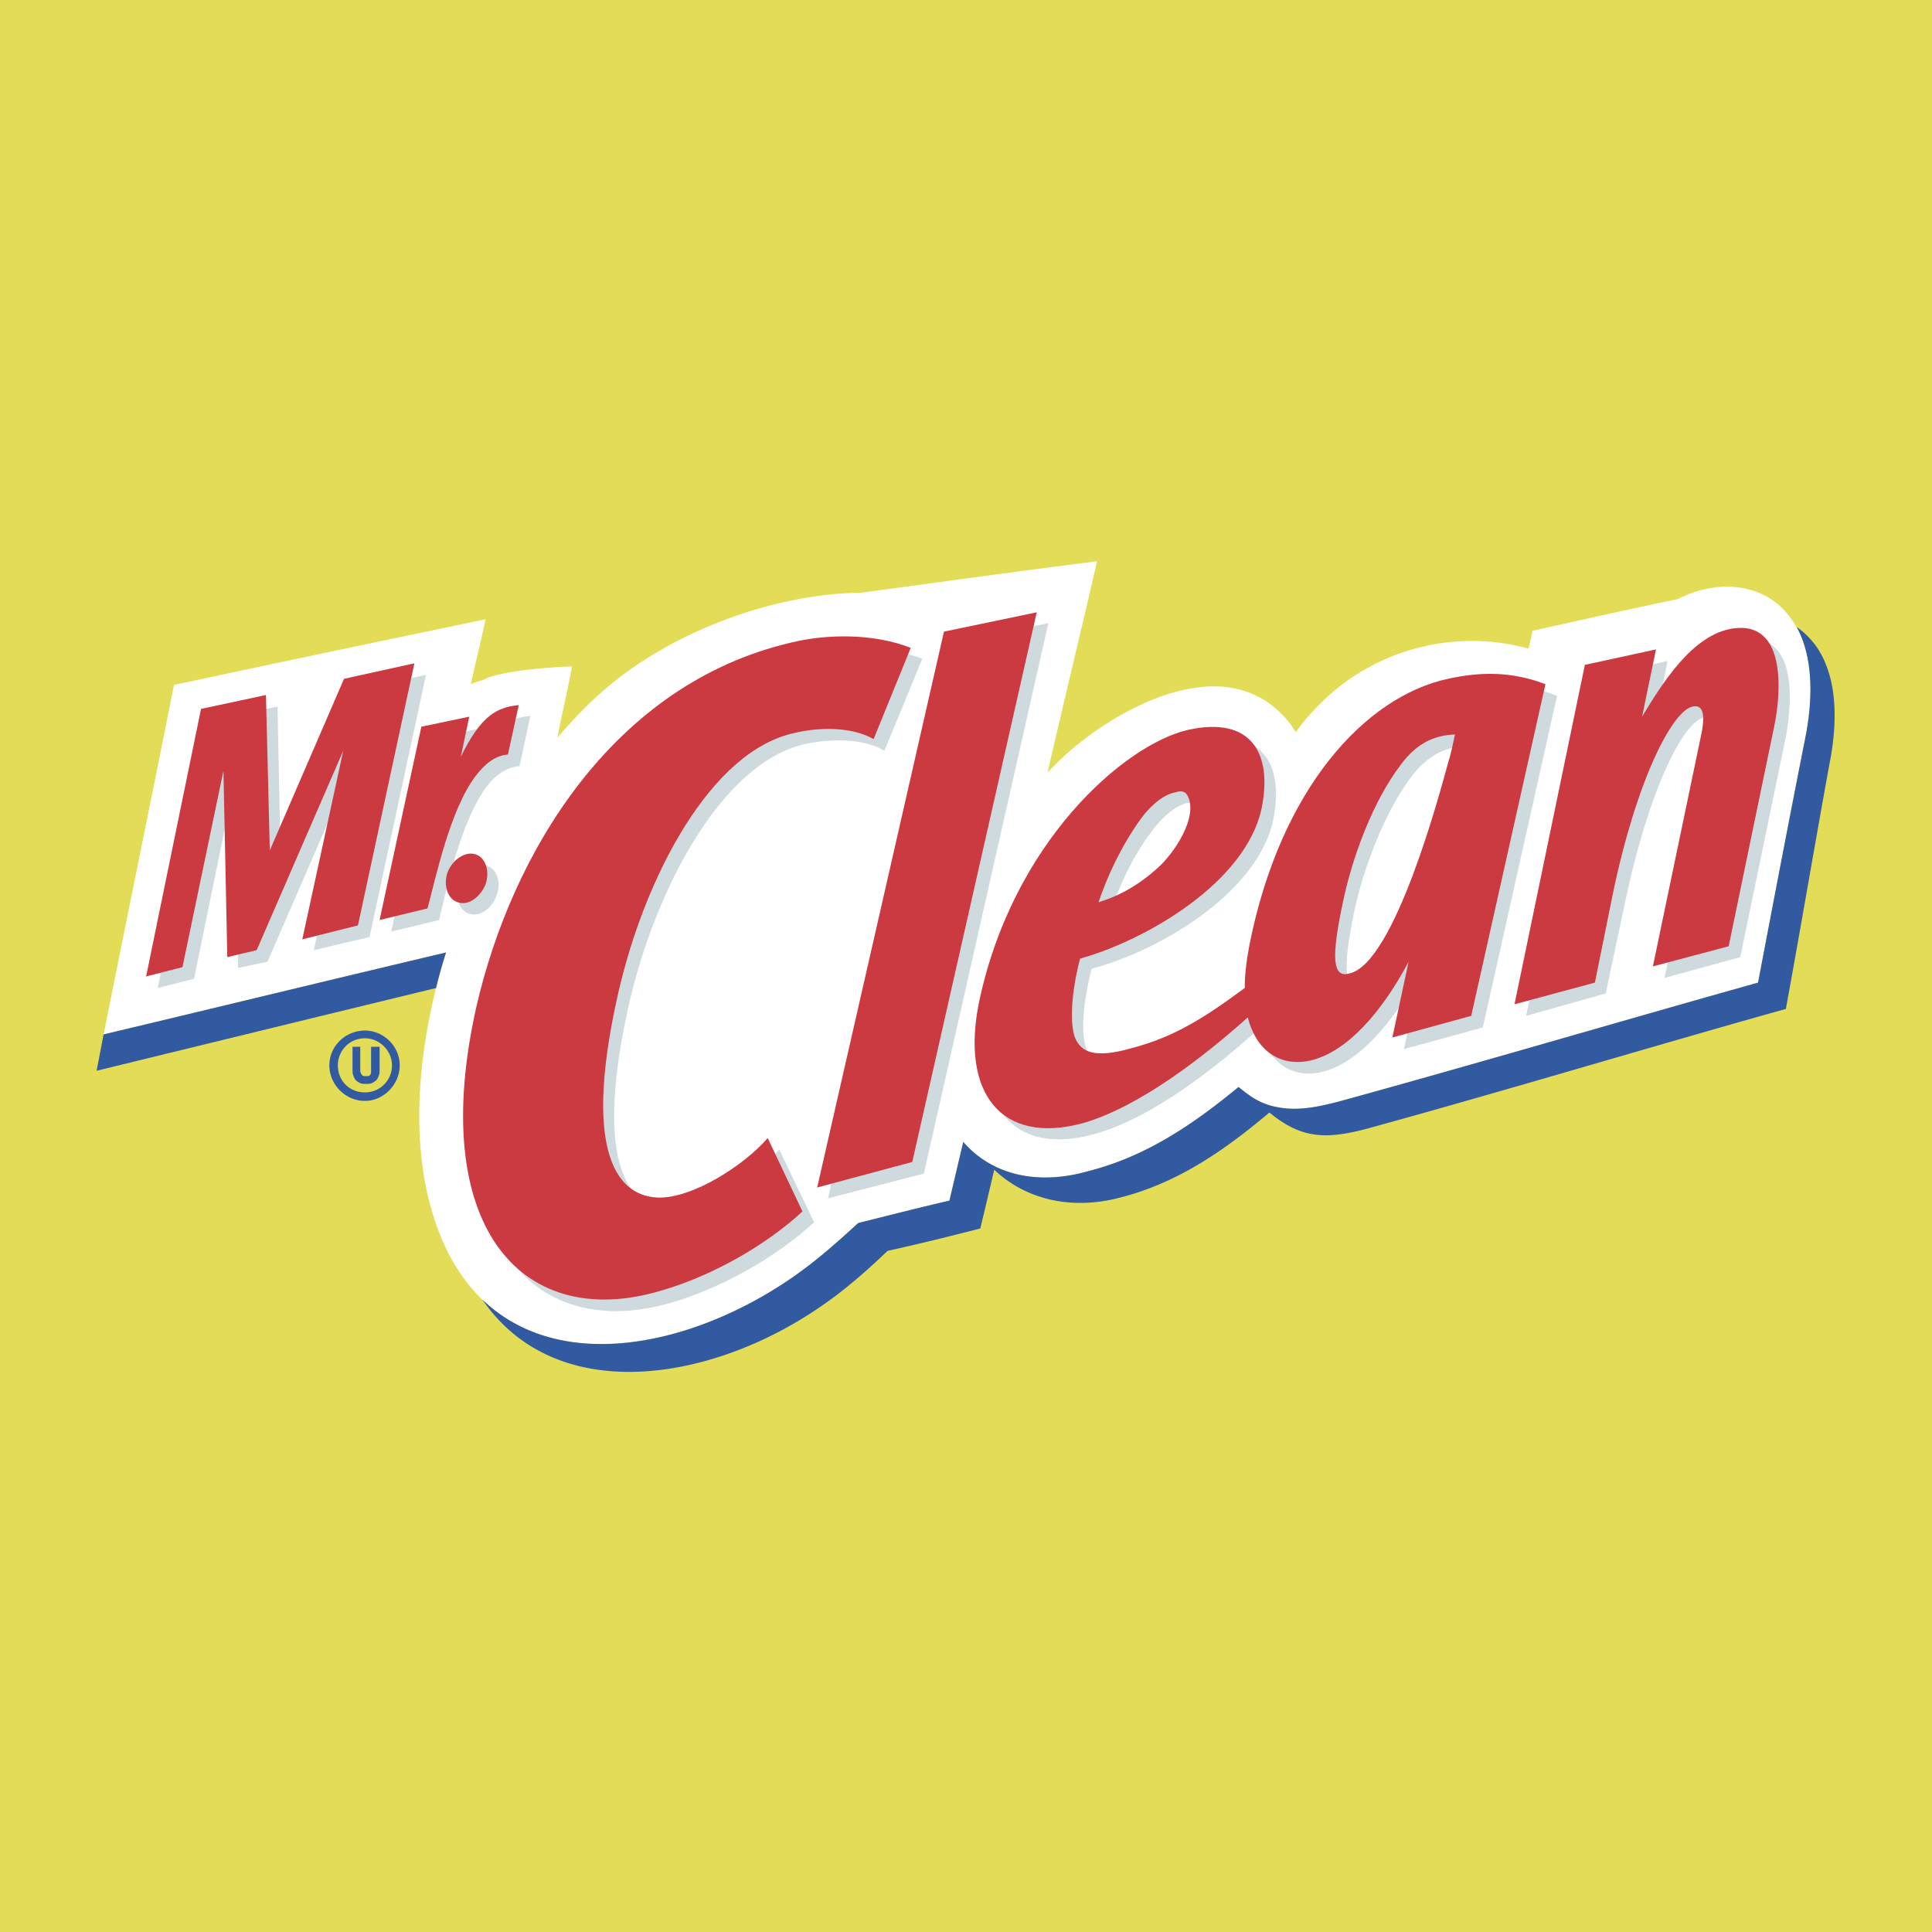 Mr. Clean logo colors